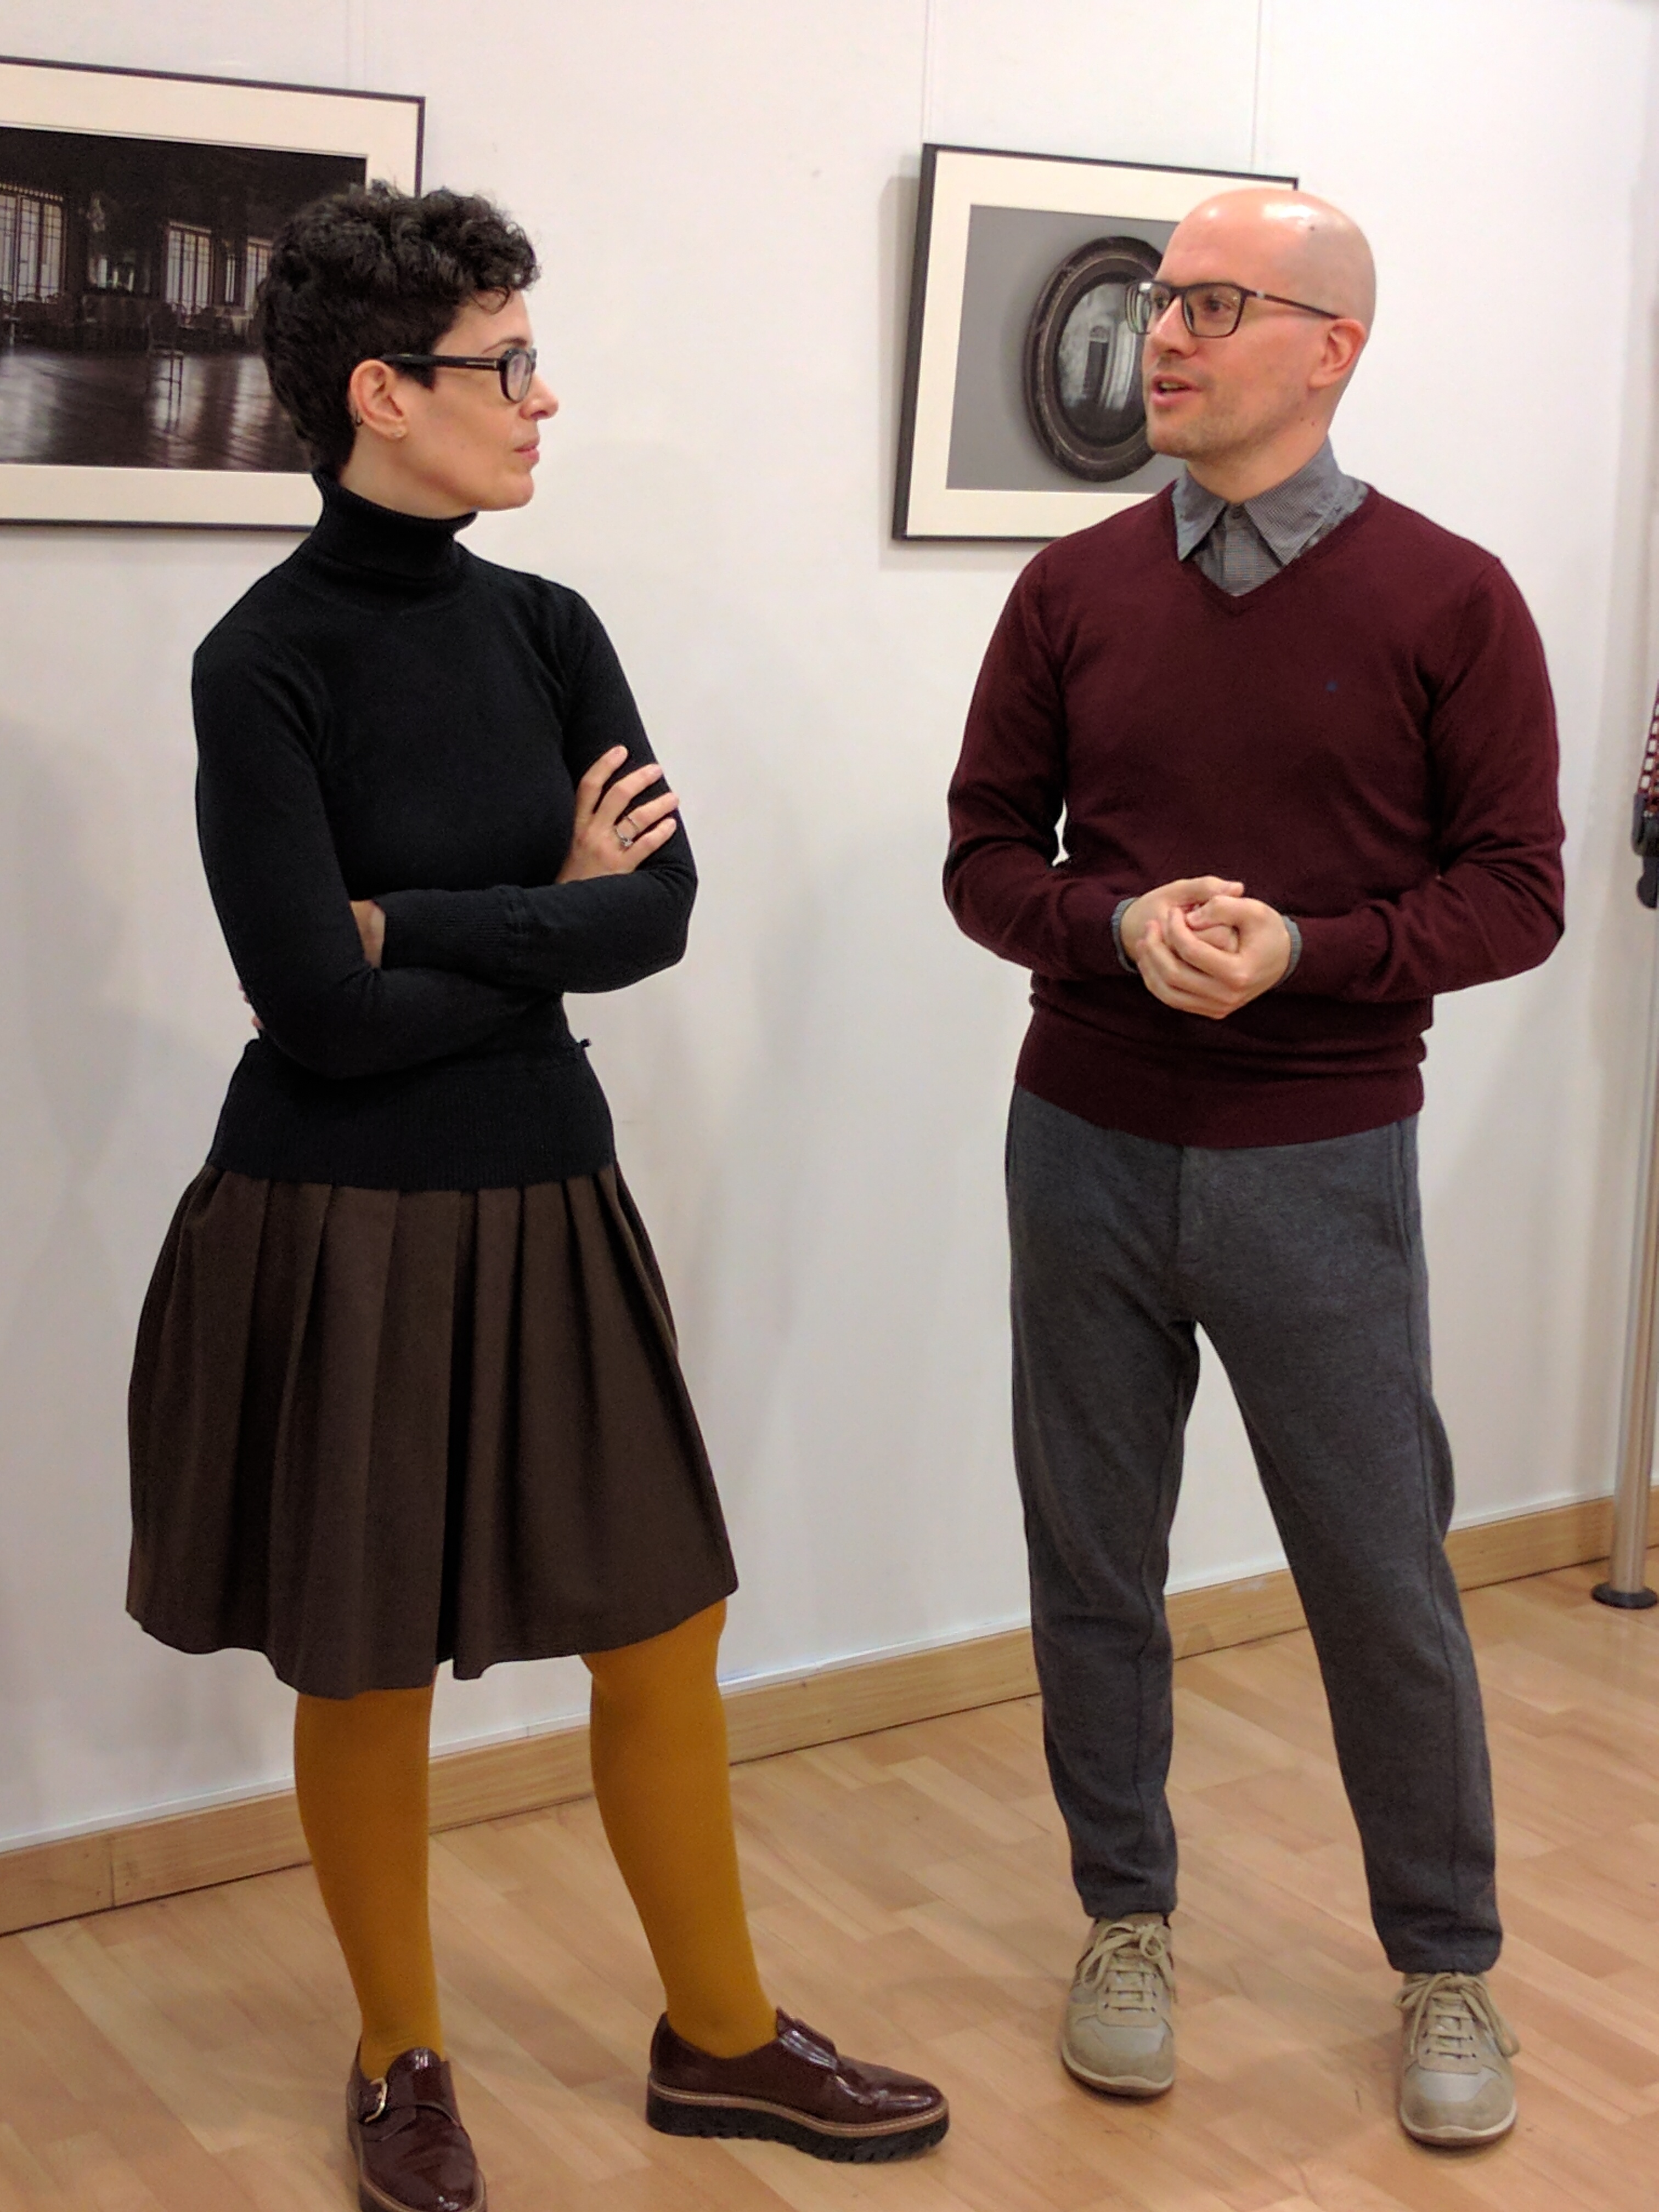 Directores y fundadores del colectivo animAMusicae, Pilar Irala y Gonzalo Arruego, en la inauguración de su última exposición "The Upside Down"